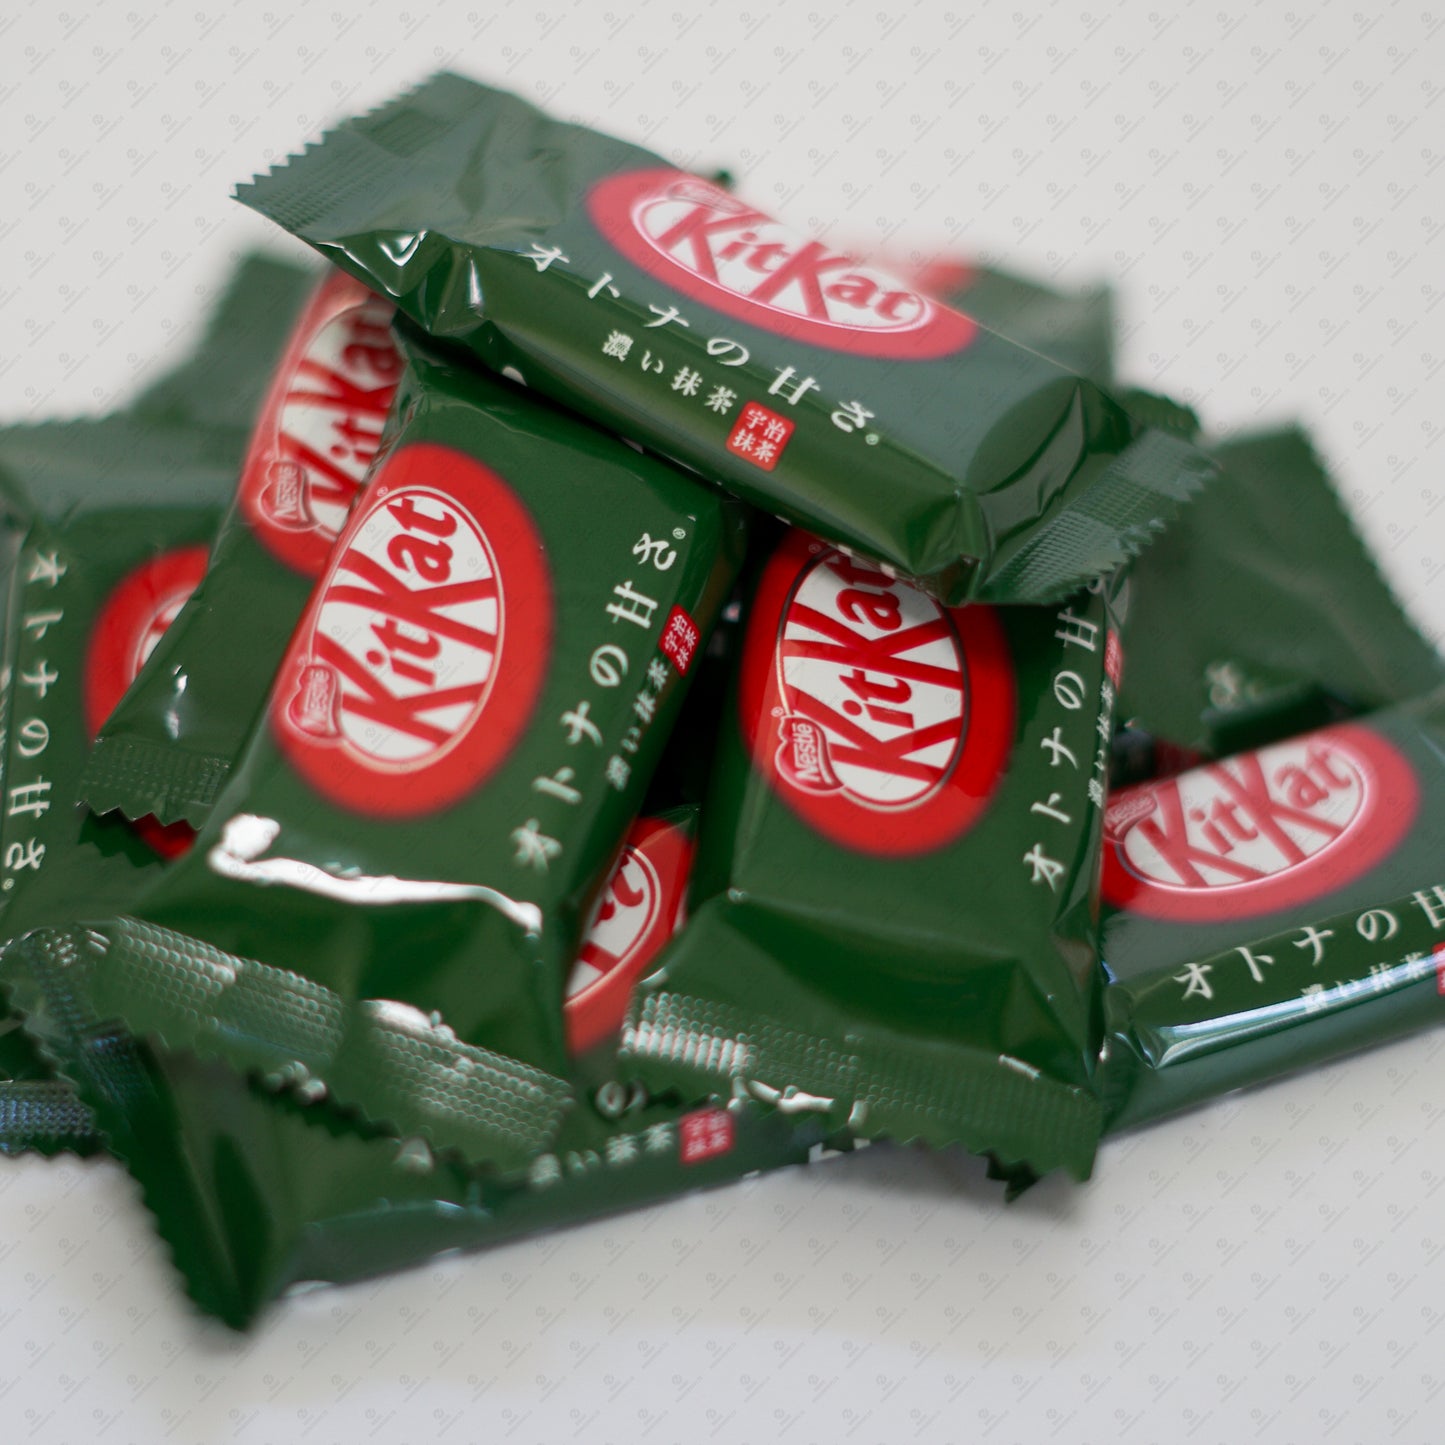 Nestle Japanese KitKat Matcha Green Tea Mini Bars 11 Pcs